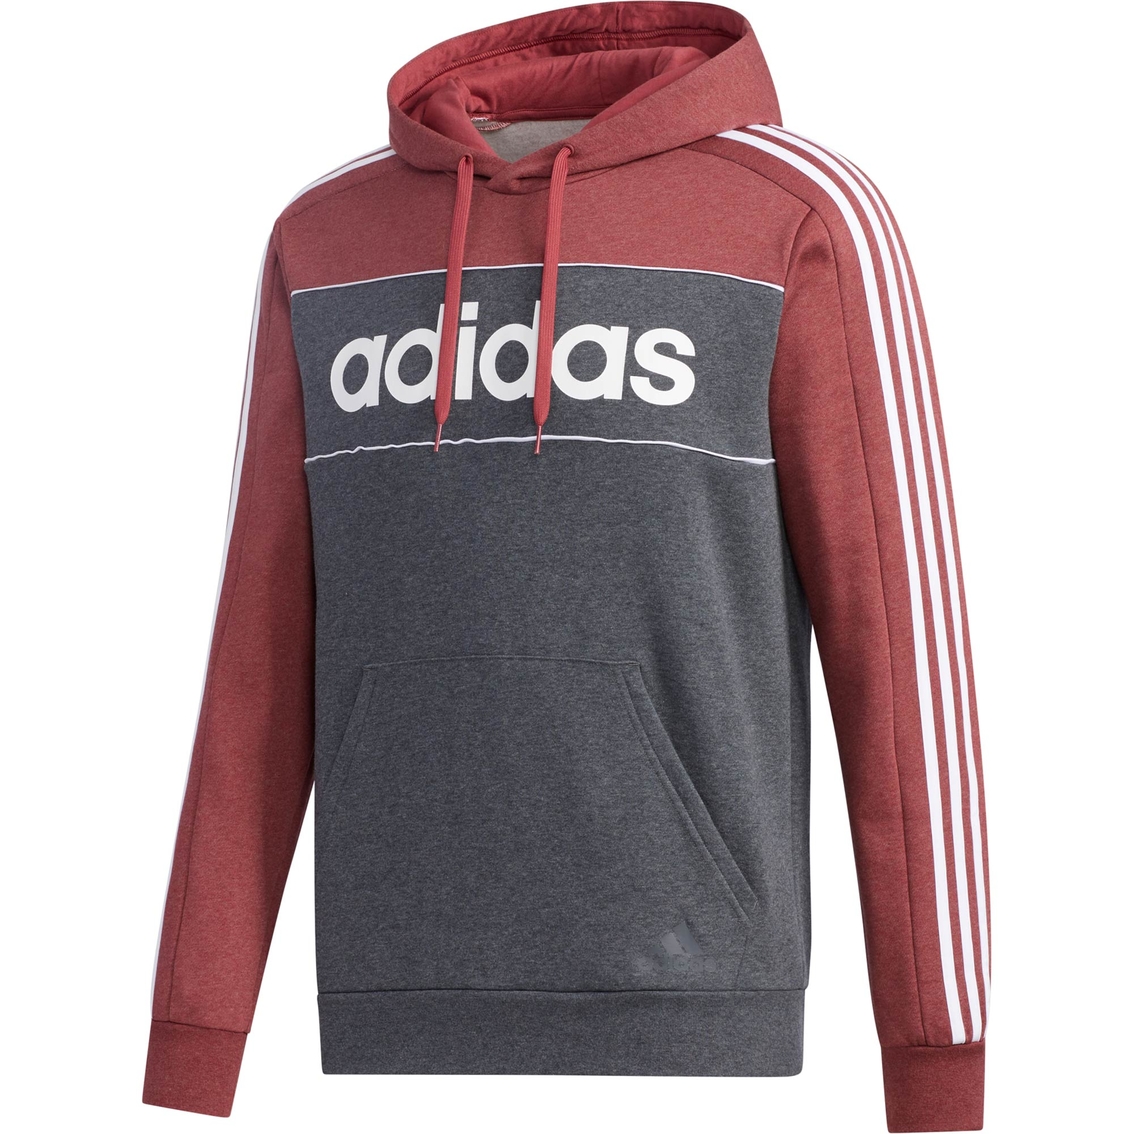 Adidas Essentials Colorblock Hoodie | Hoodies & Jackets | Clothing ...